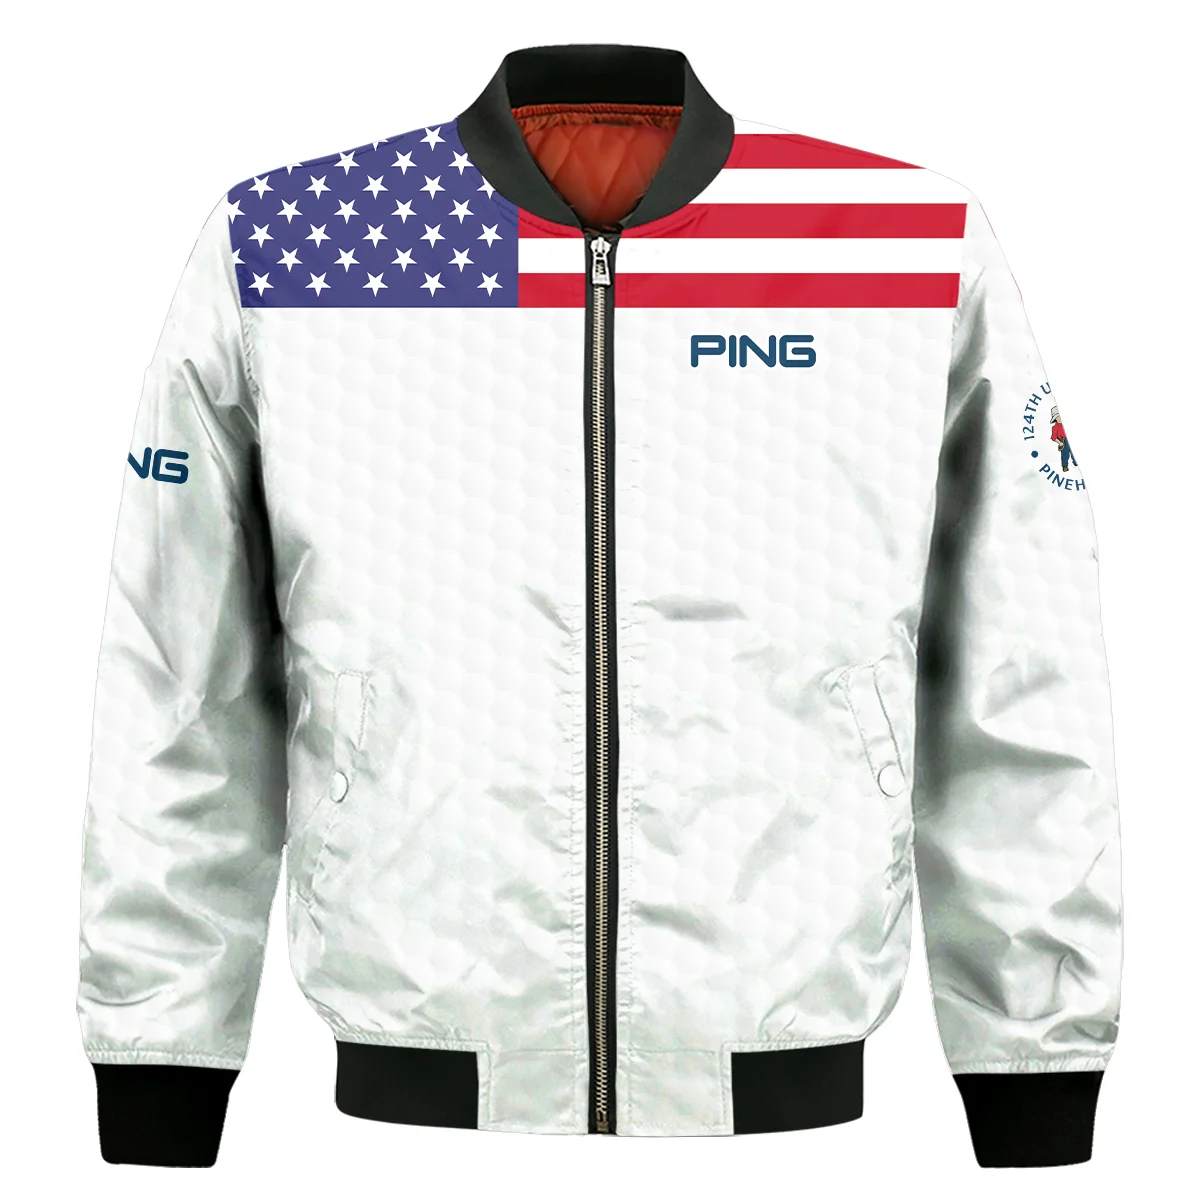 Ping 124th U.S. Open Pinehurst Bomber Jacket USA Flag Golf Pattern All Over Print Bomber Jacket